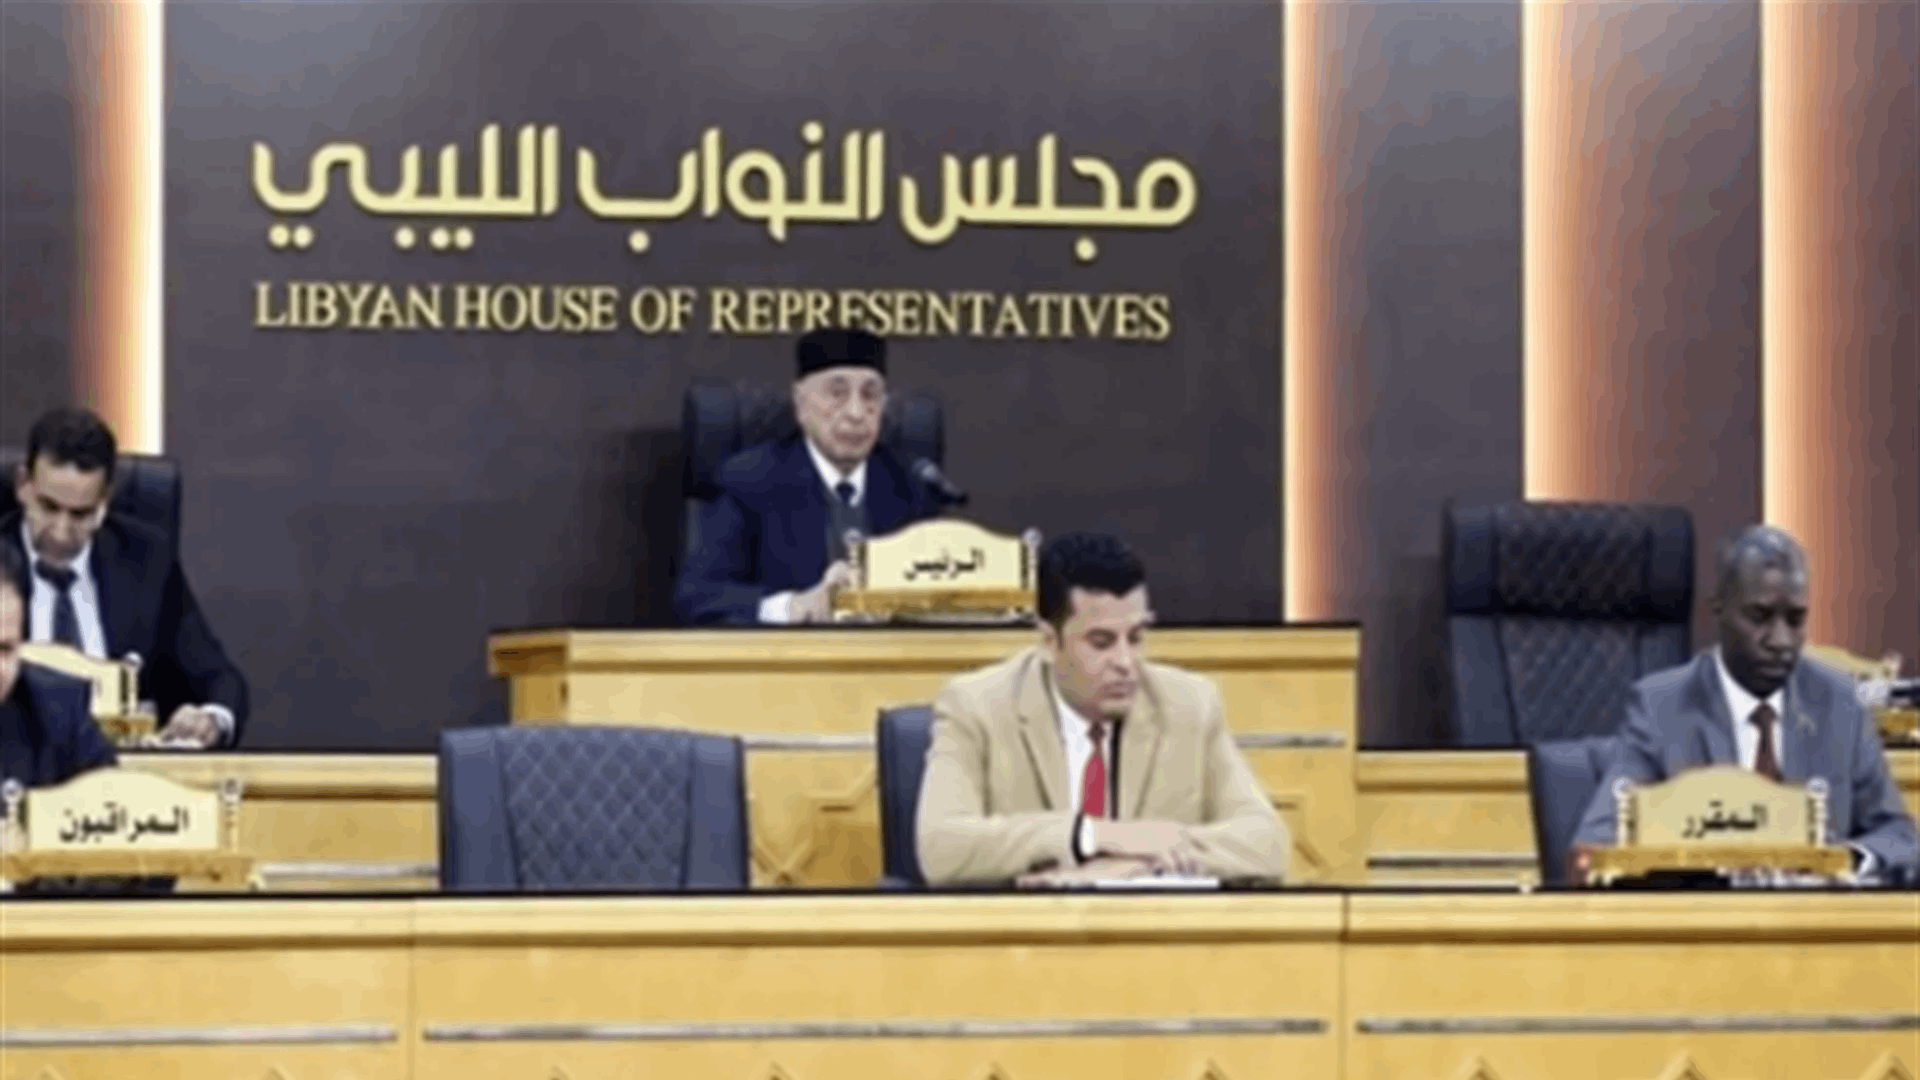 المجلس الأعلى للدولة في ليبيا رفض الموازنة التي أقرها مجلس النواب